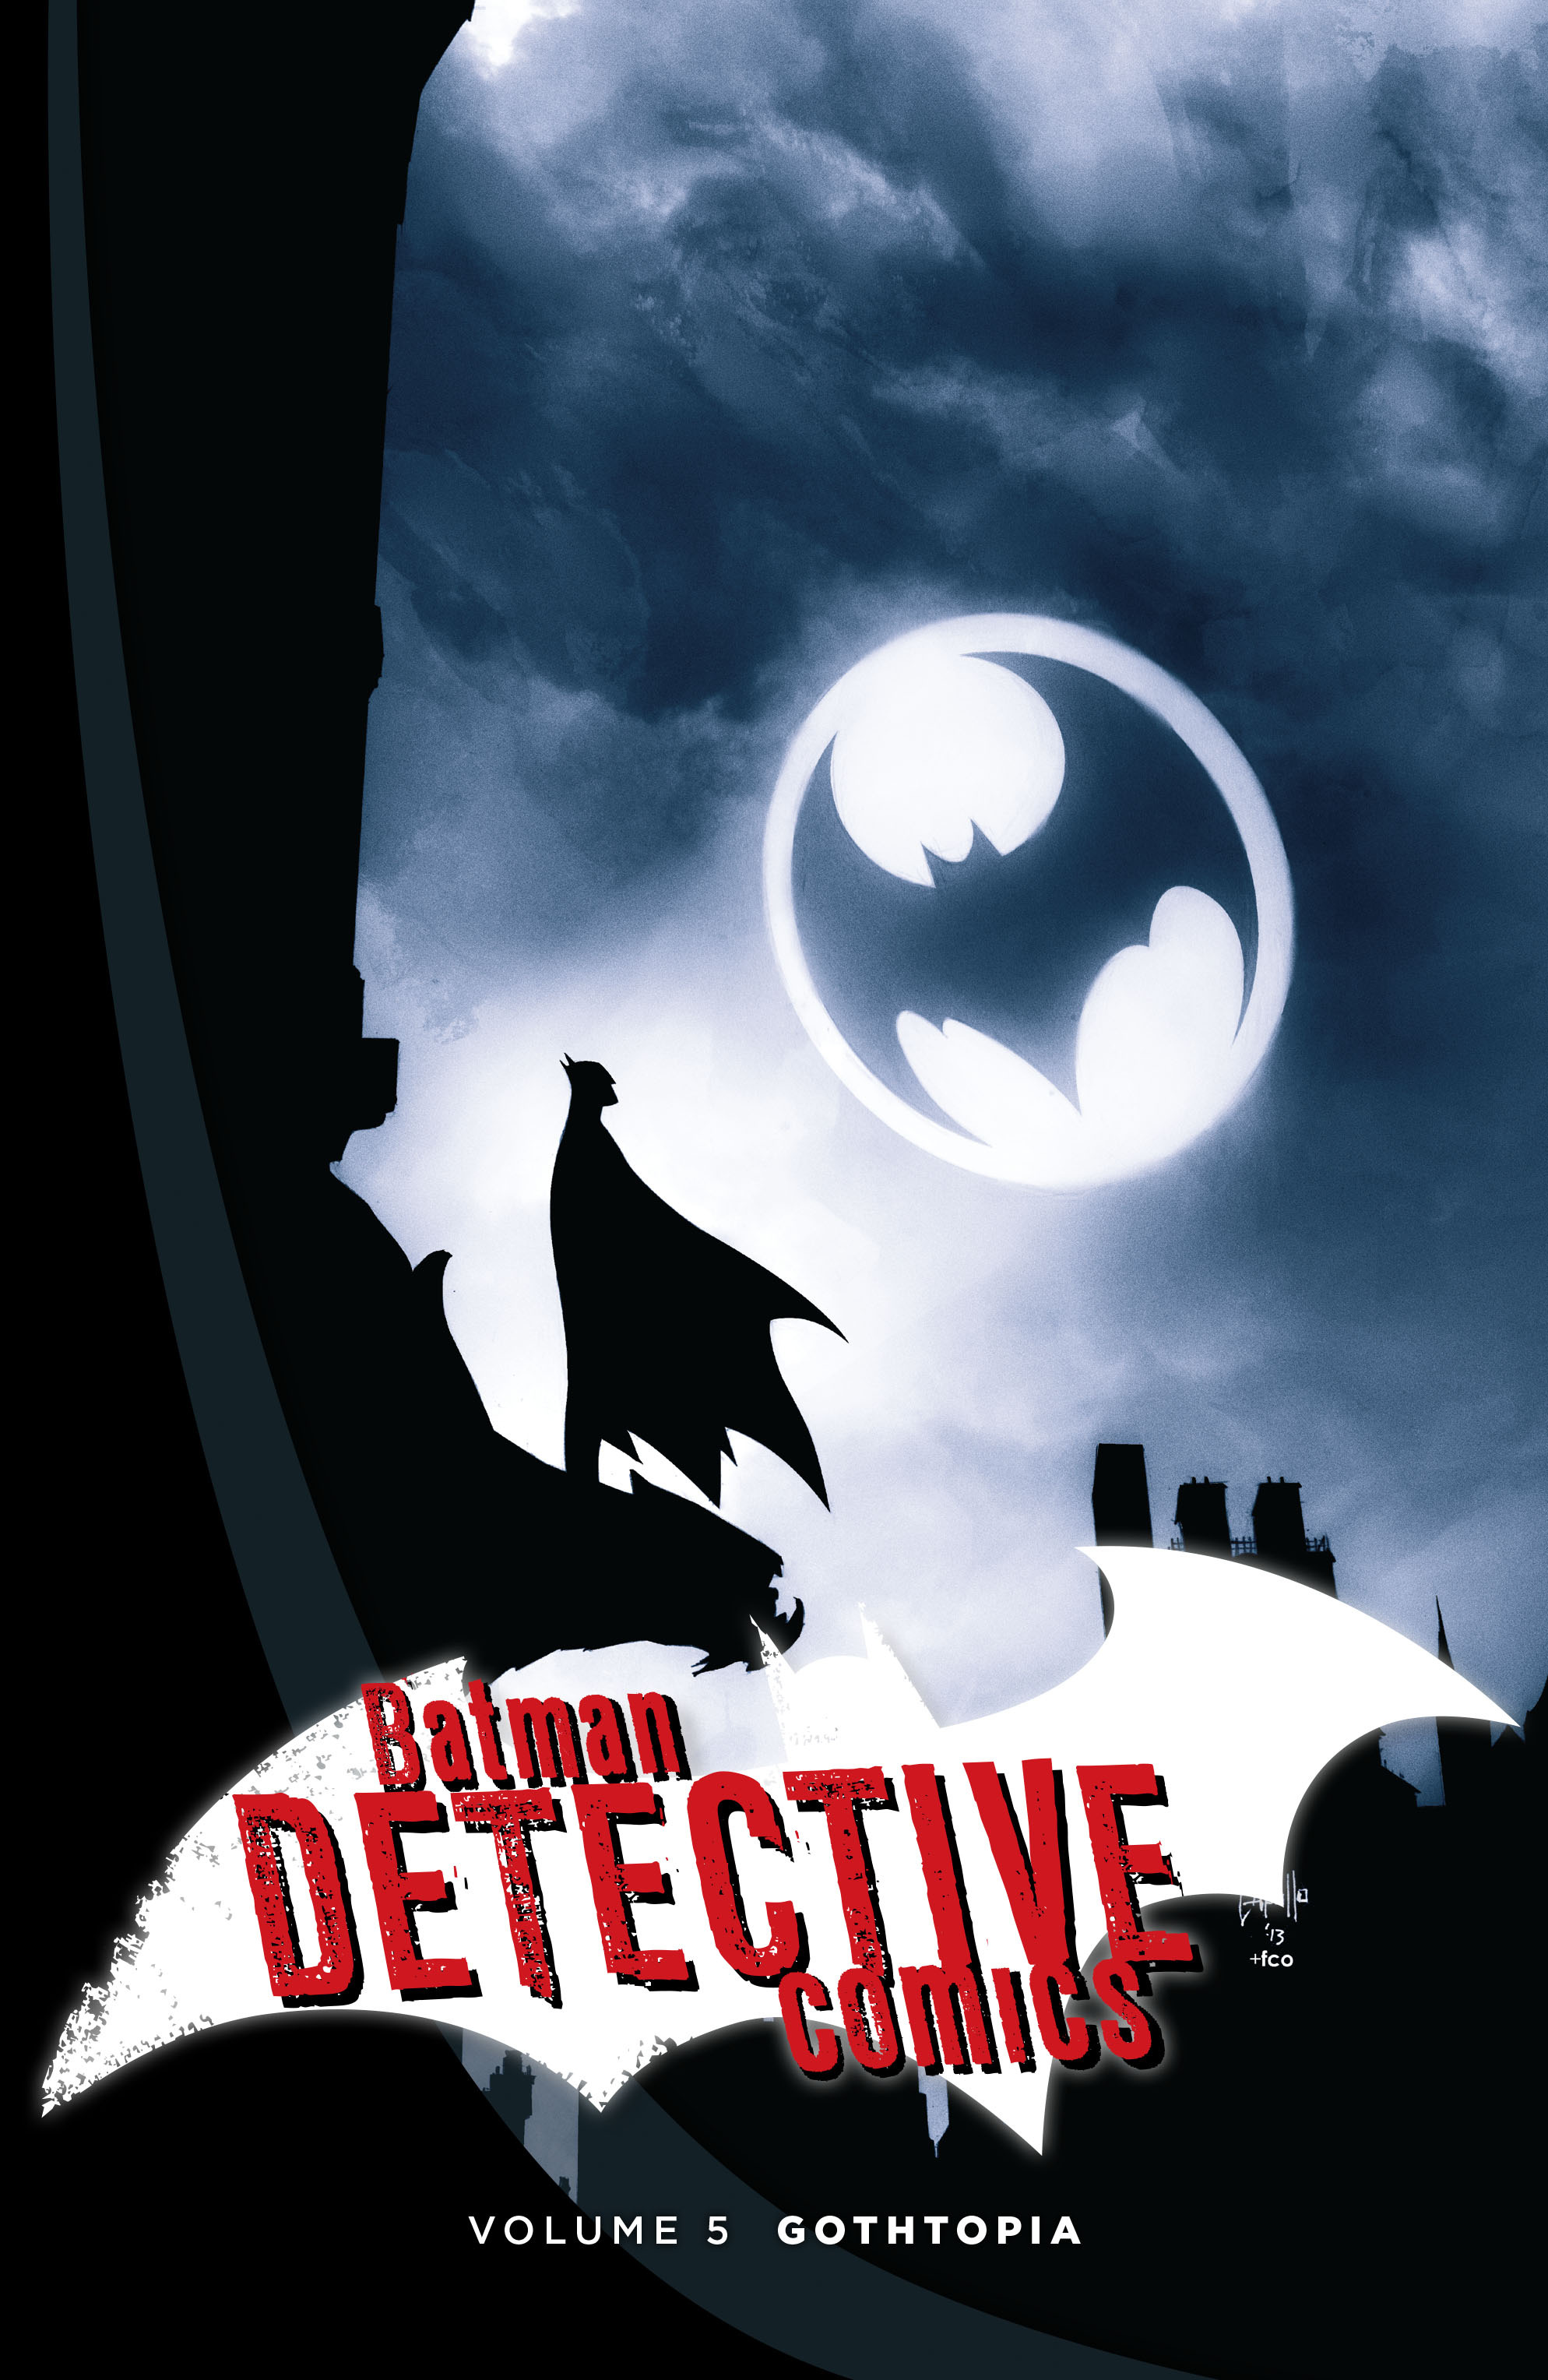 Read online Batman: Detective Comics comic -  Issue # TPB 5 - 2